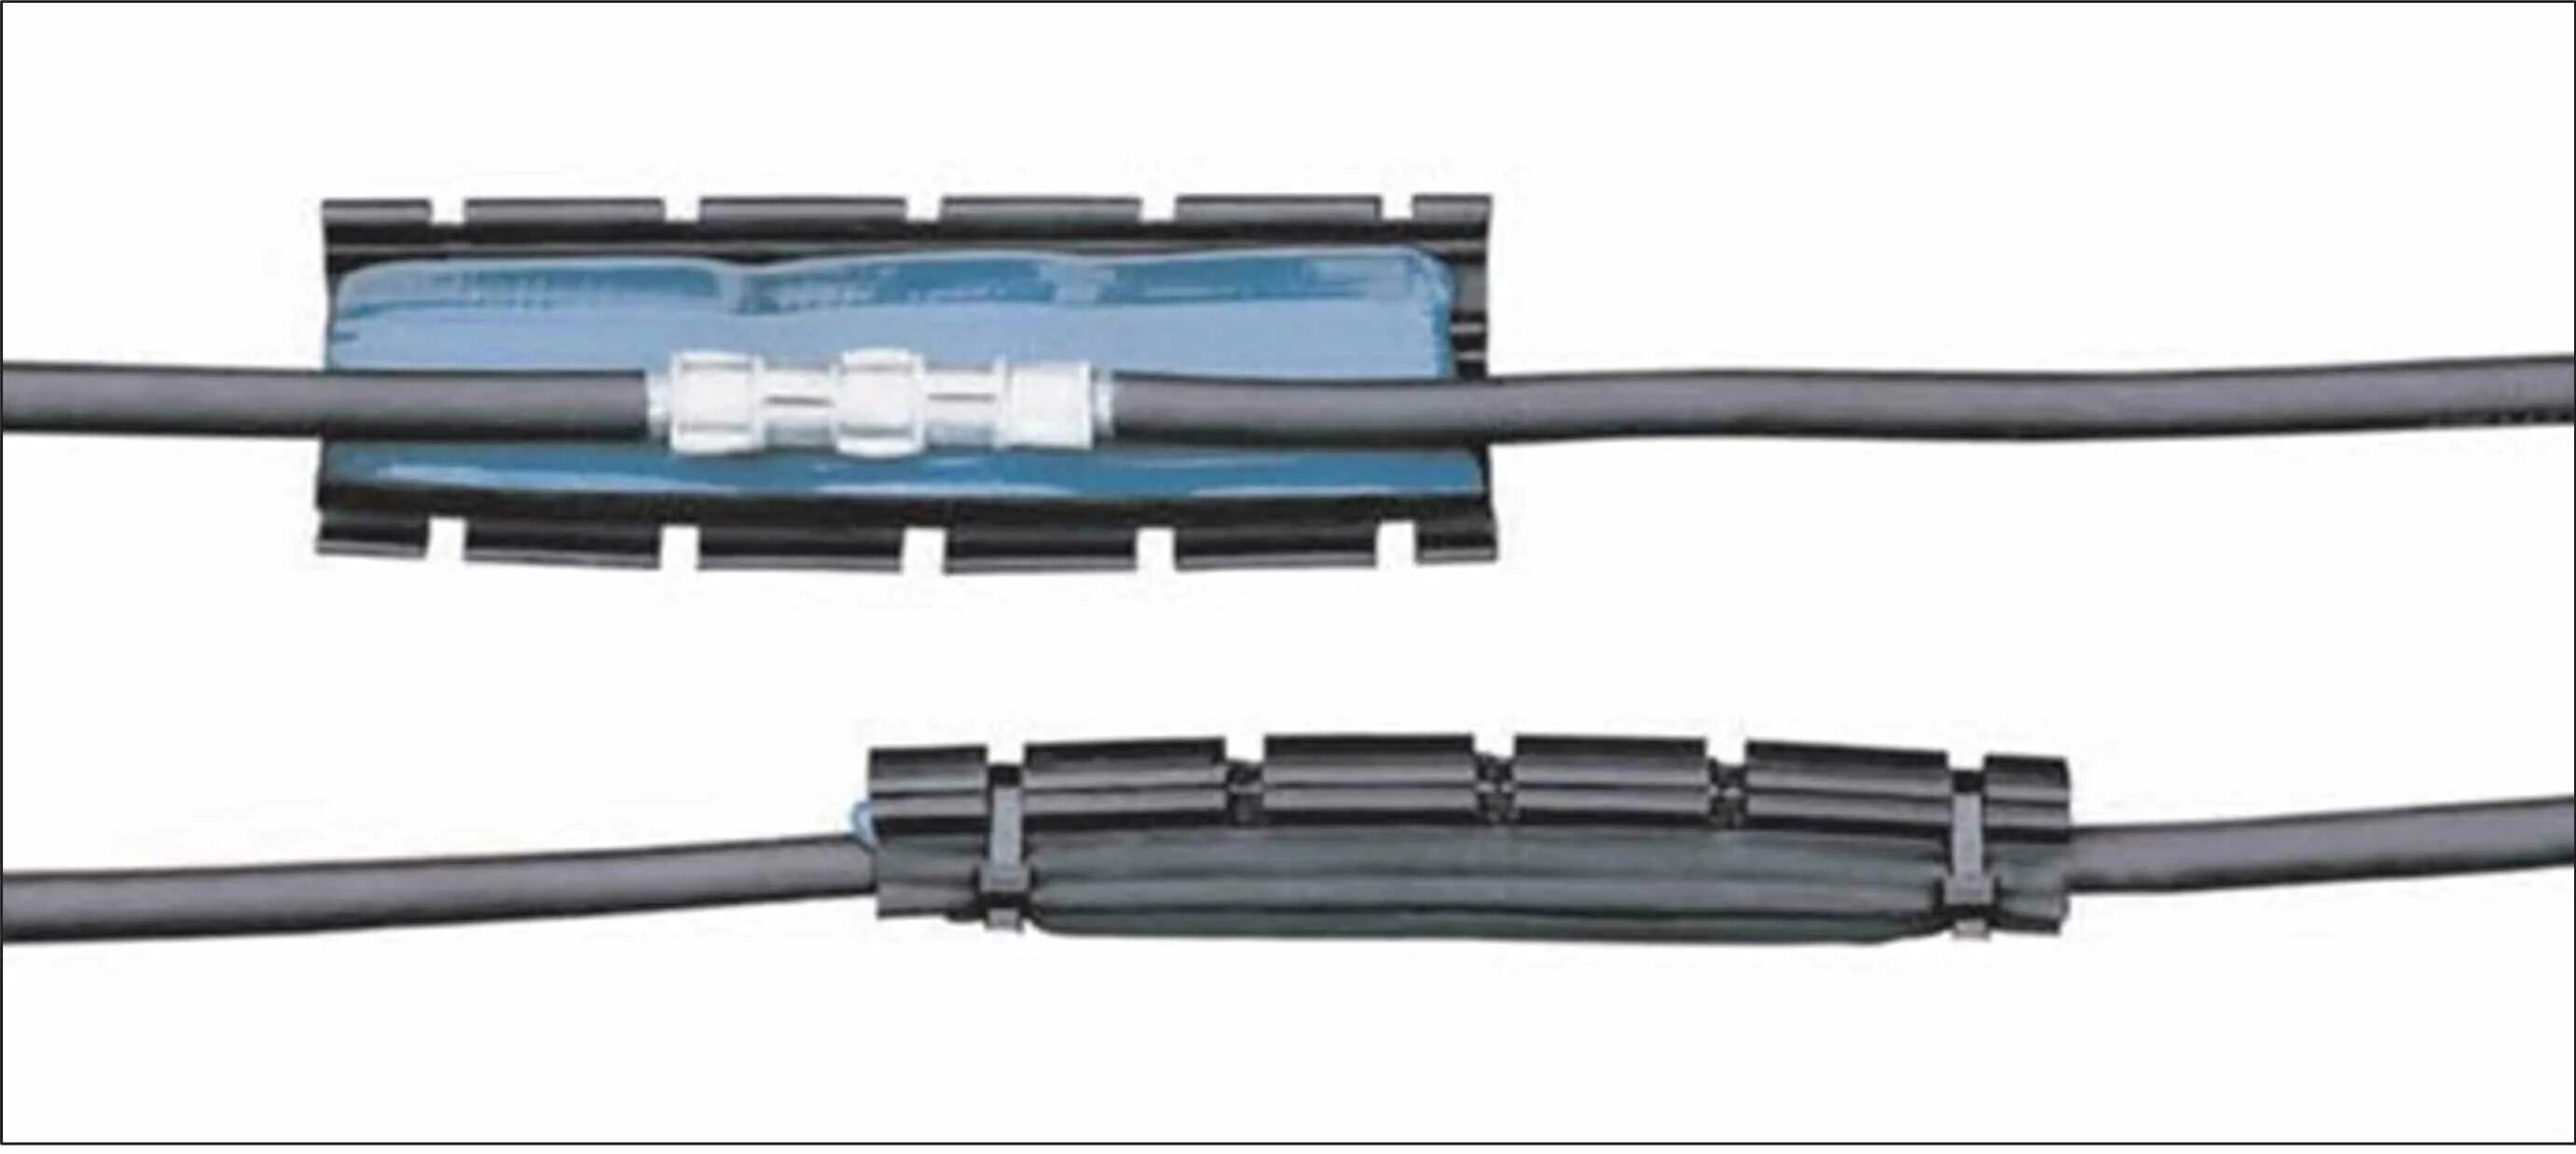 Муфты для кабеля 4 жилы. Соединительная муфта для кабеля 4х95- 4х150. Муфта соединительная для кабеля СИП 4х16. Соединительная муфта для СИП 2 (3х35+1х50) с кабелем. Муфта Райхем соединительная.